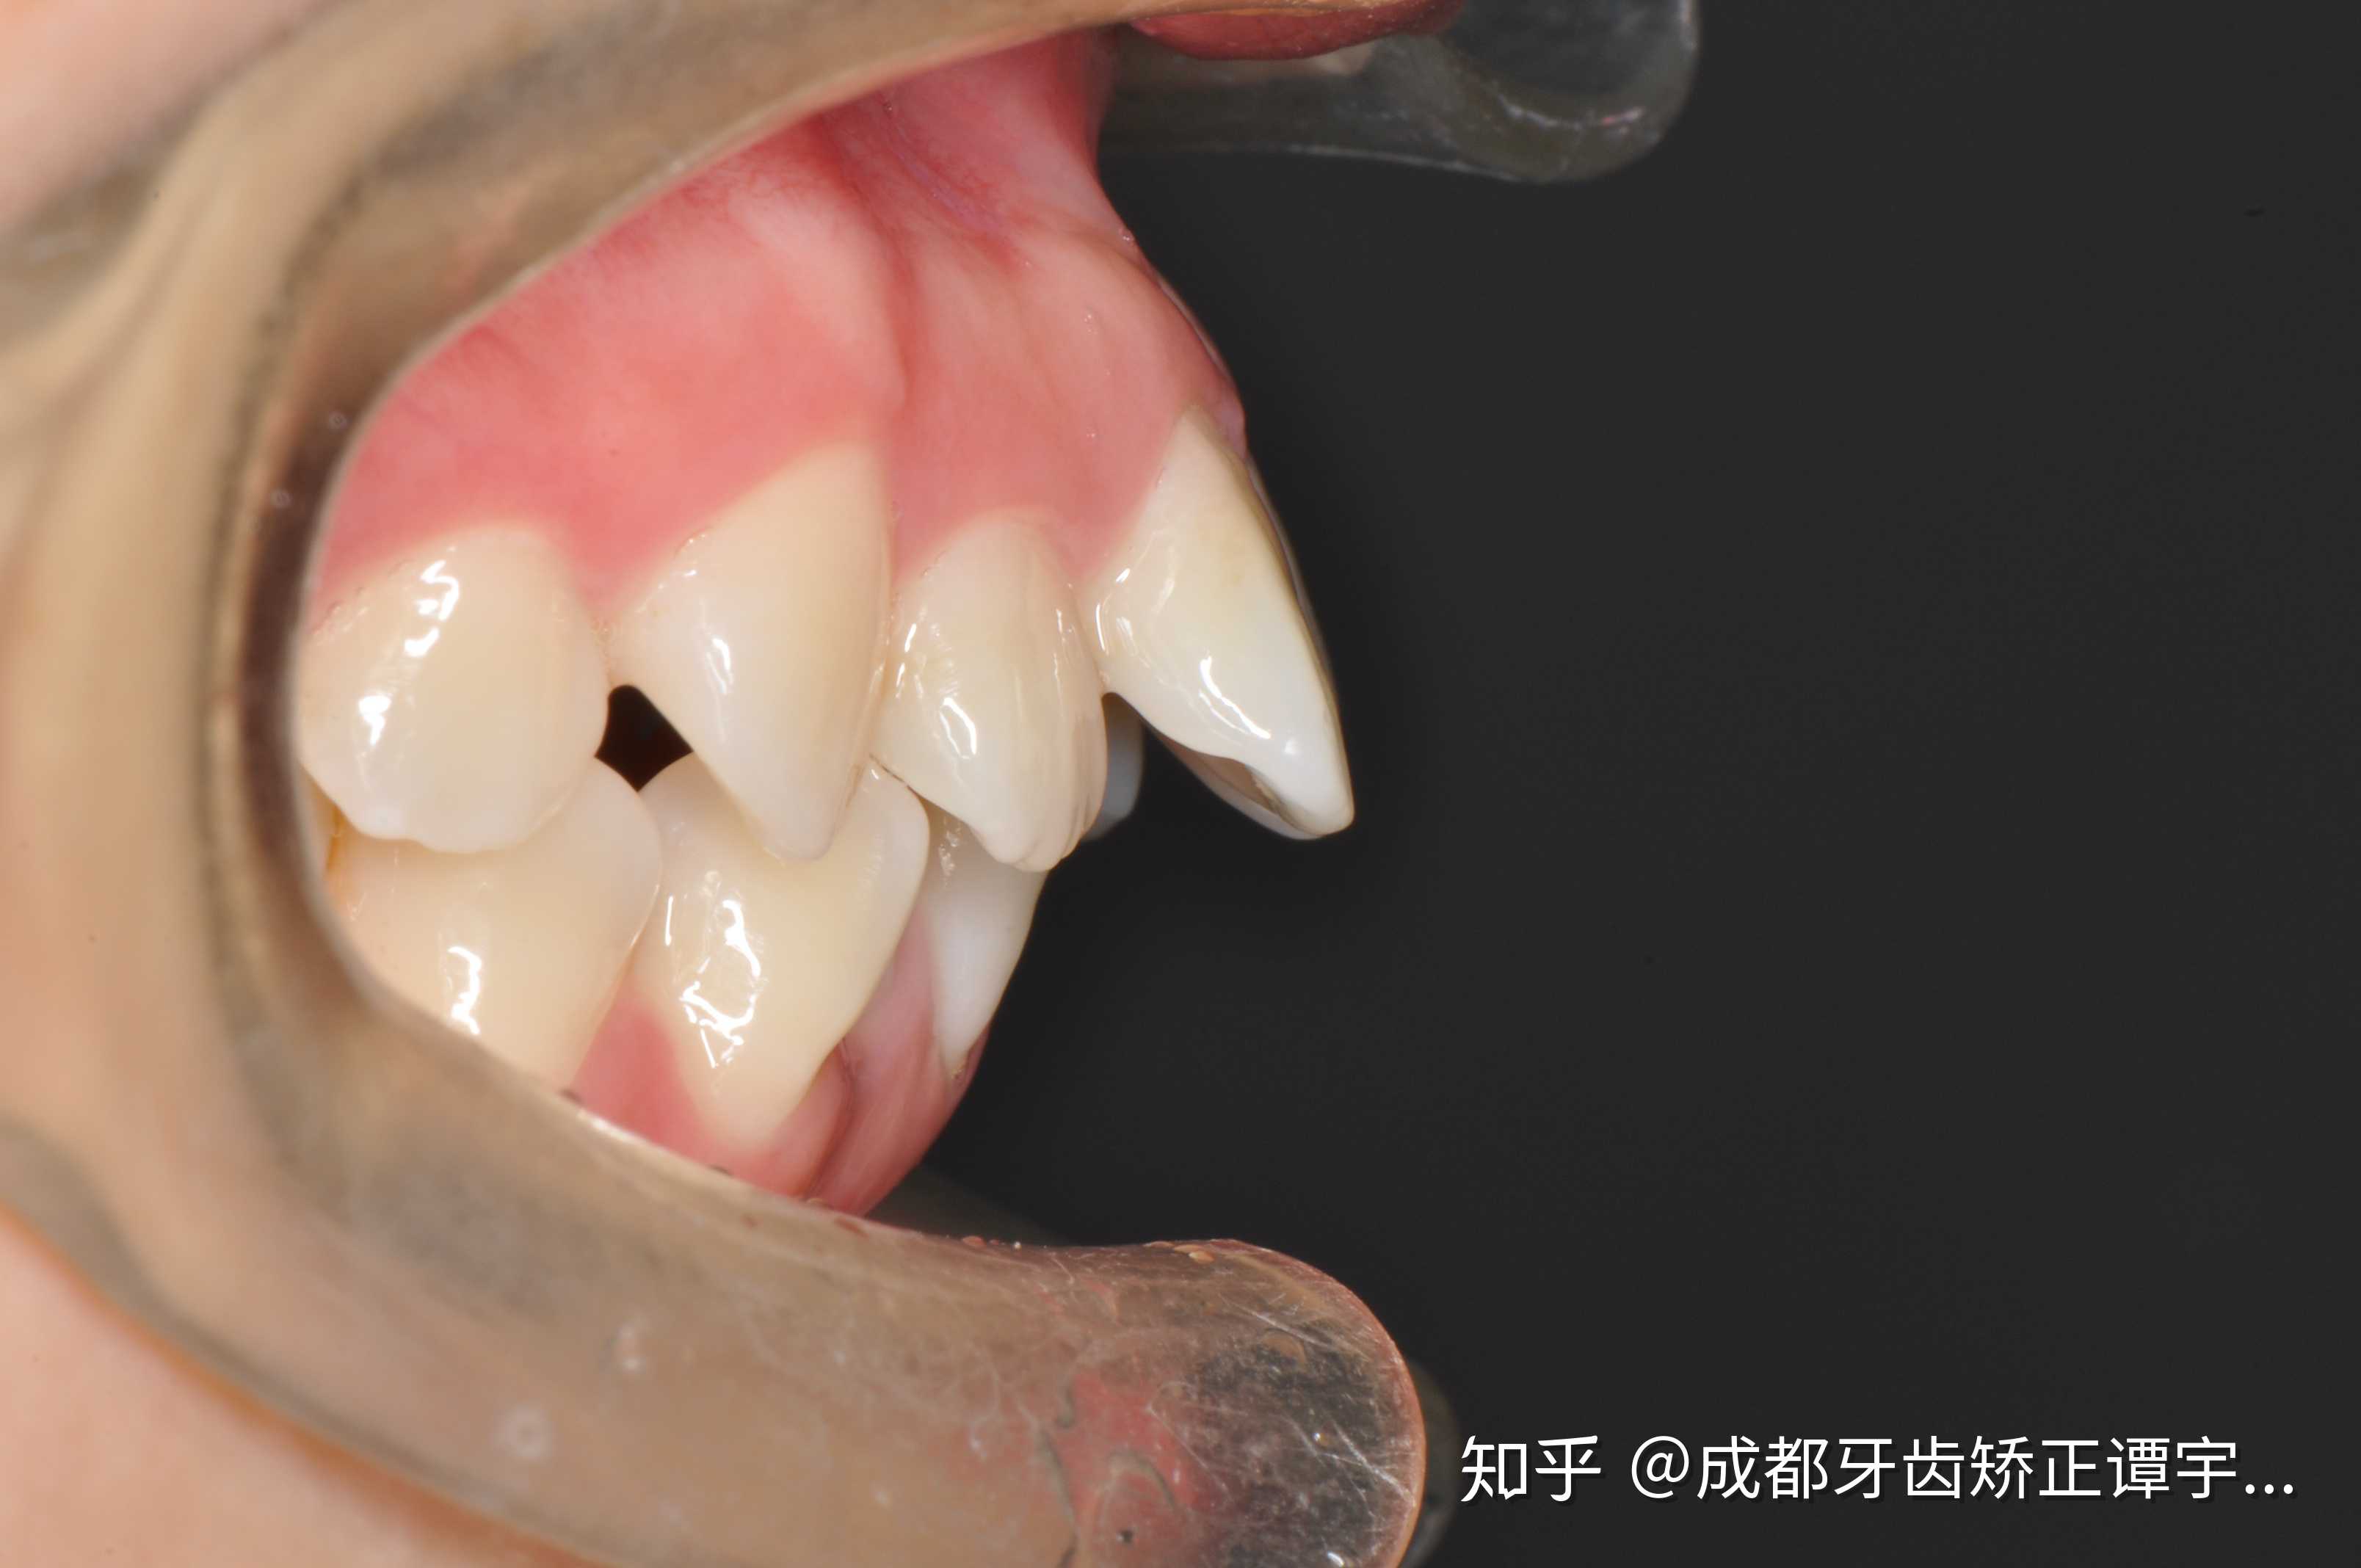 成都牙齿矫正谭宇医生 的想法: 关于骨性前突与牙性前突的表现特征